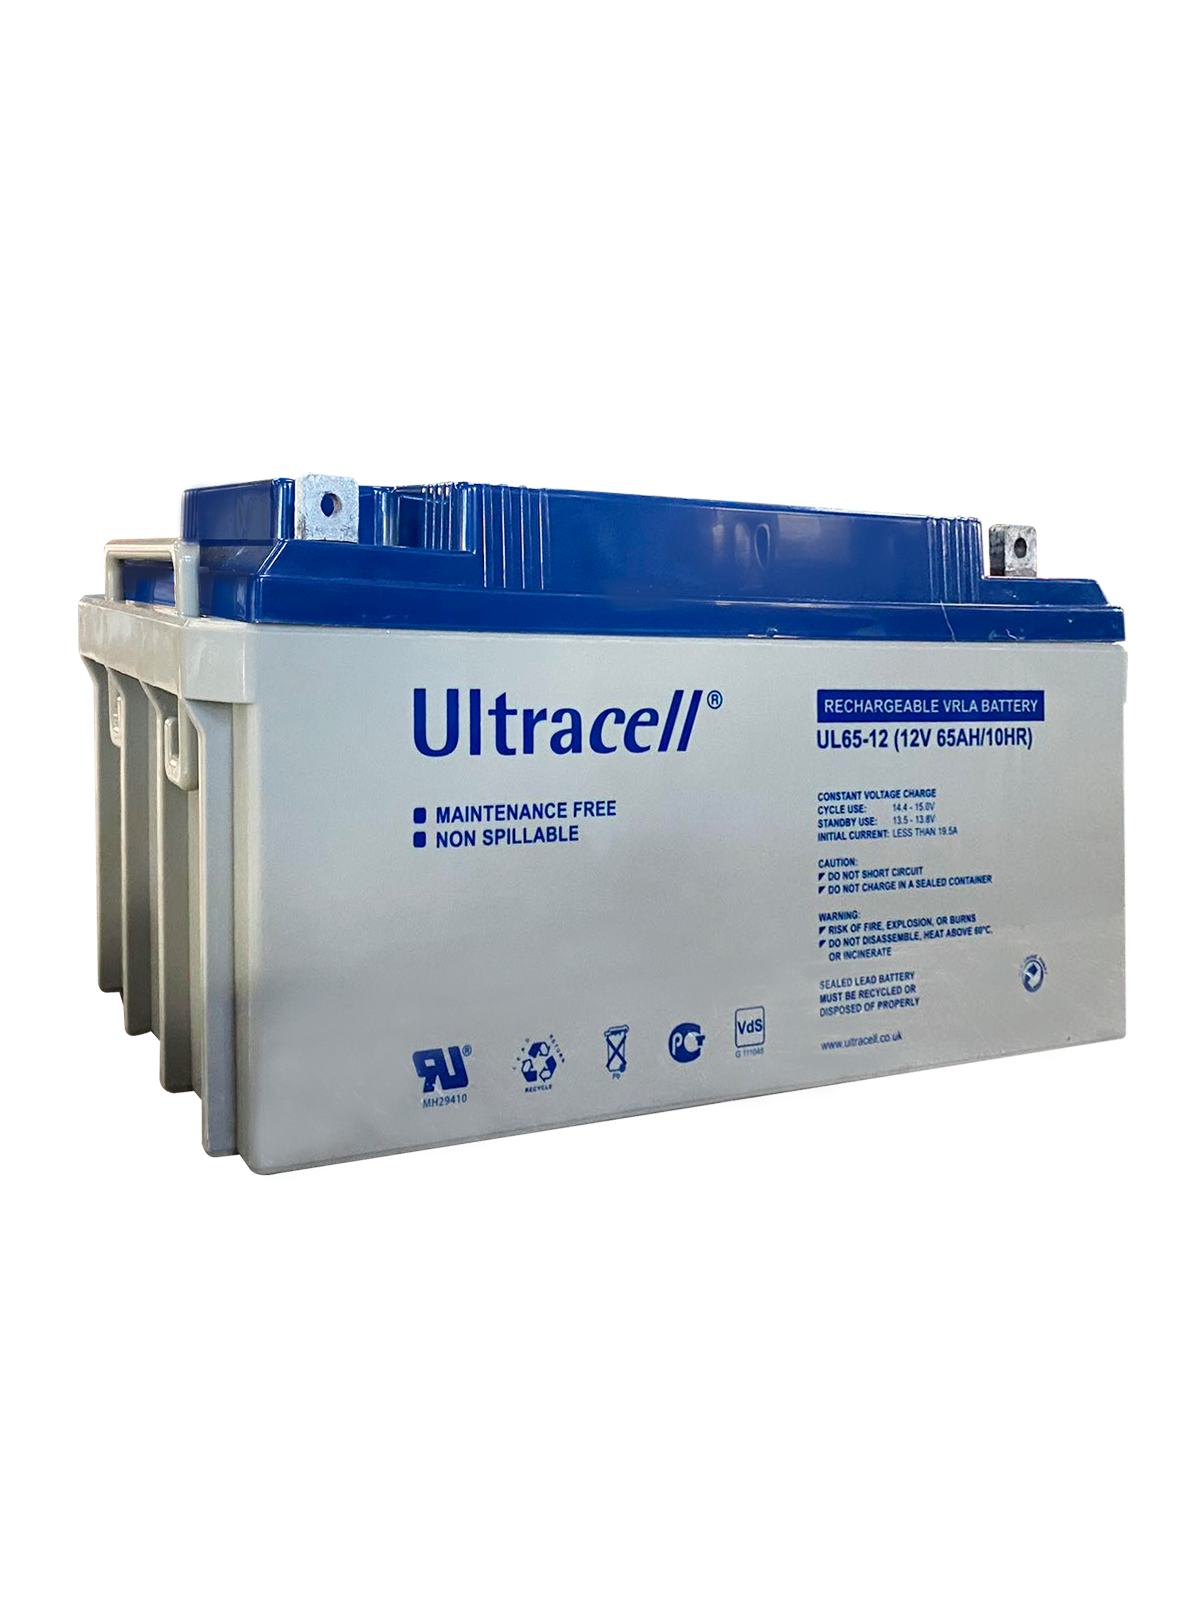 Photovoltaic battery - Ultracel GEL battery 12V 100Ah